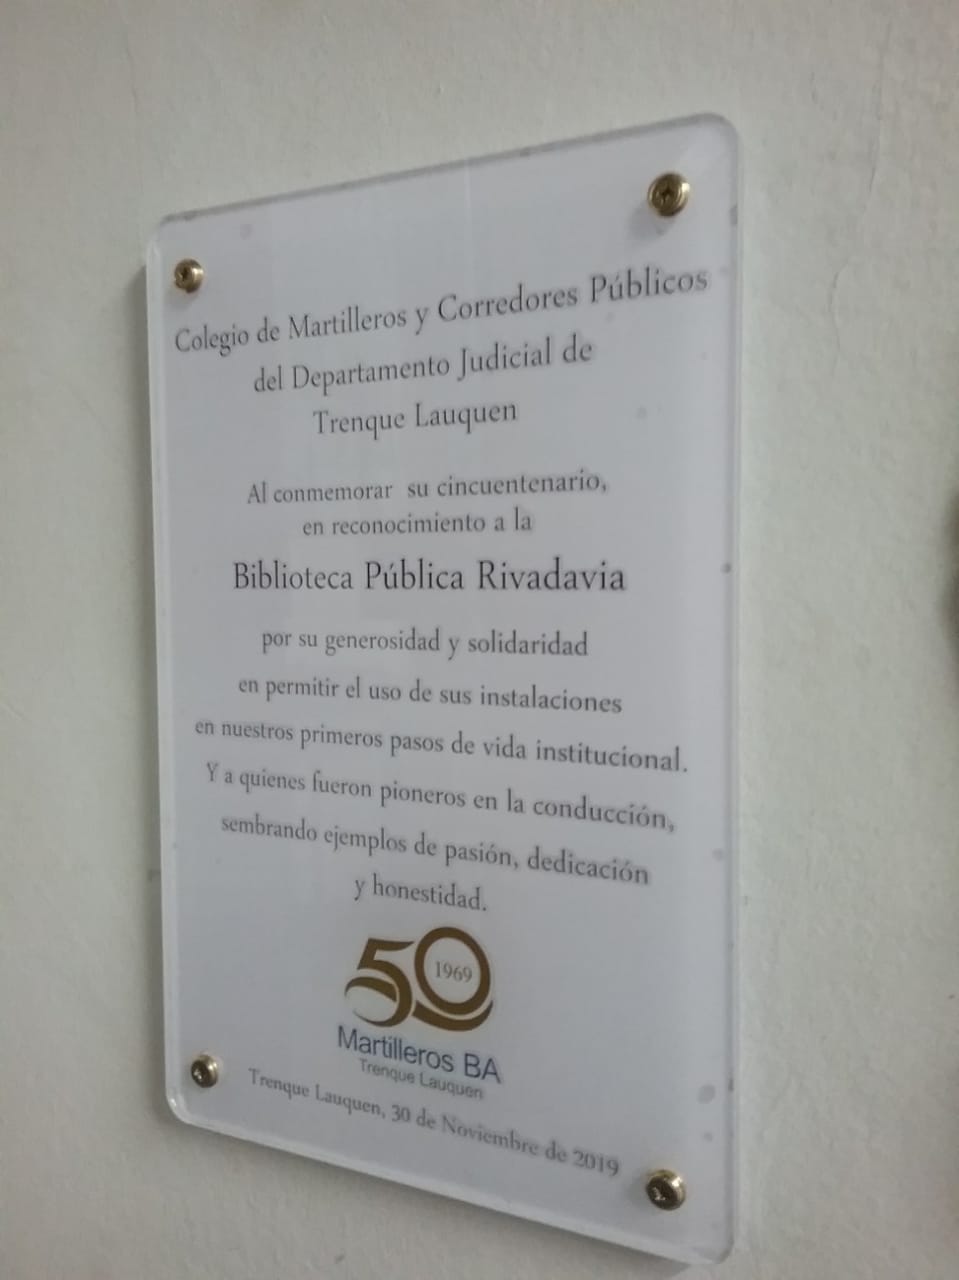 50 aniversario del Colegio de Martilleros y Corredores Públicos del Departamento Judicial Trenque Lauquen